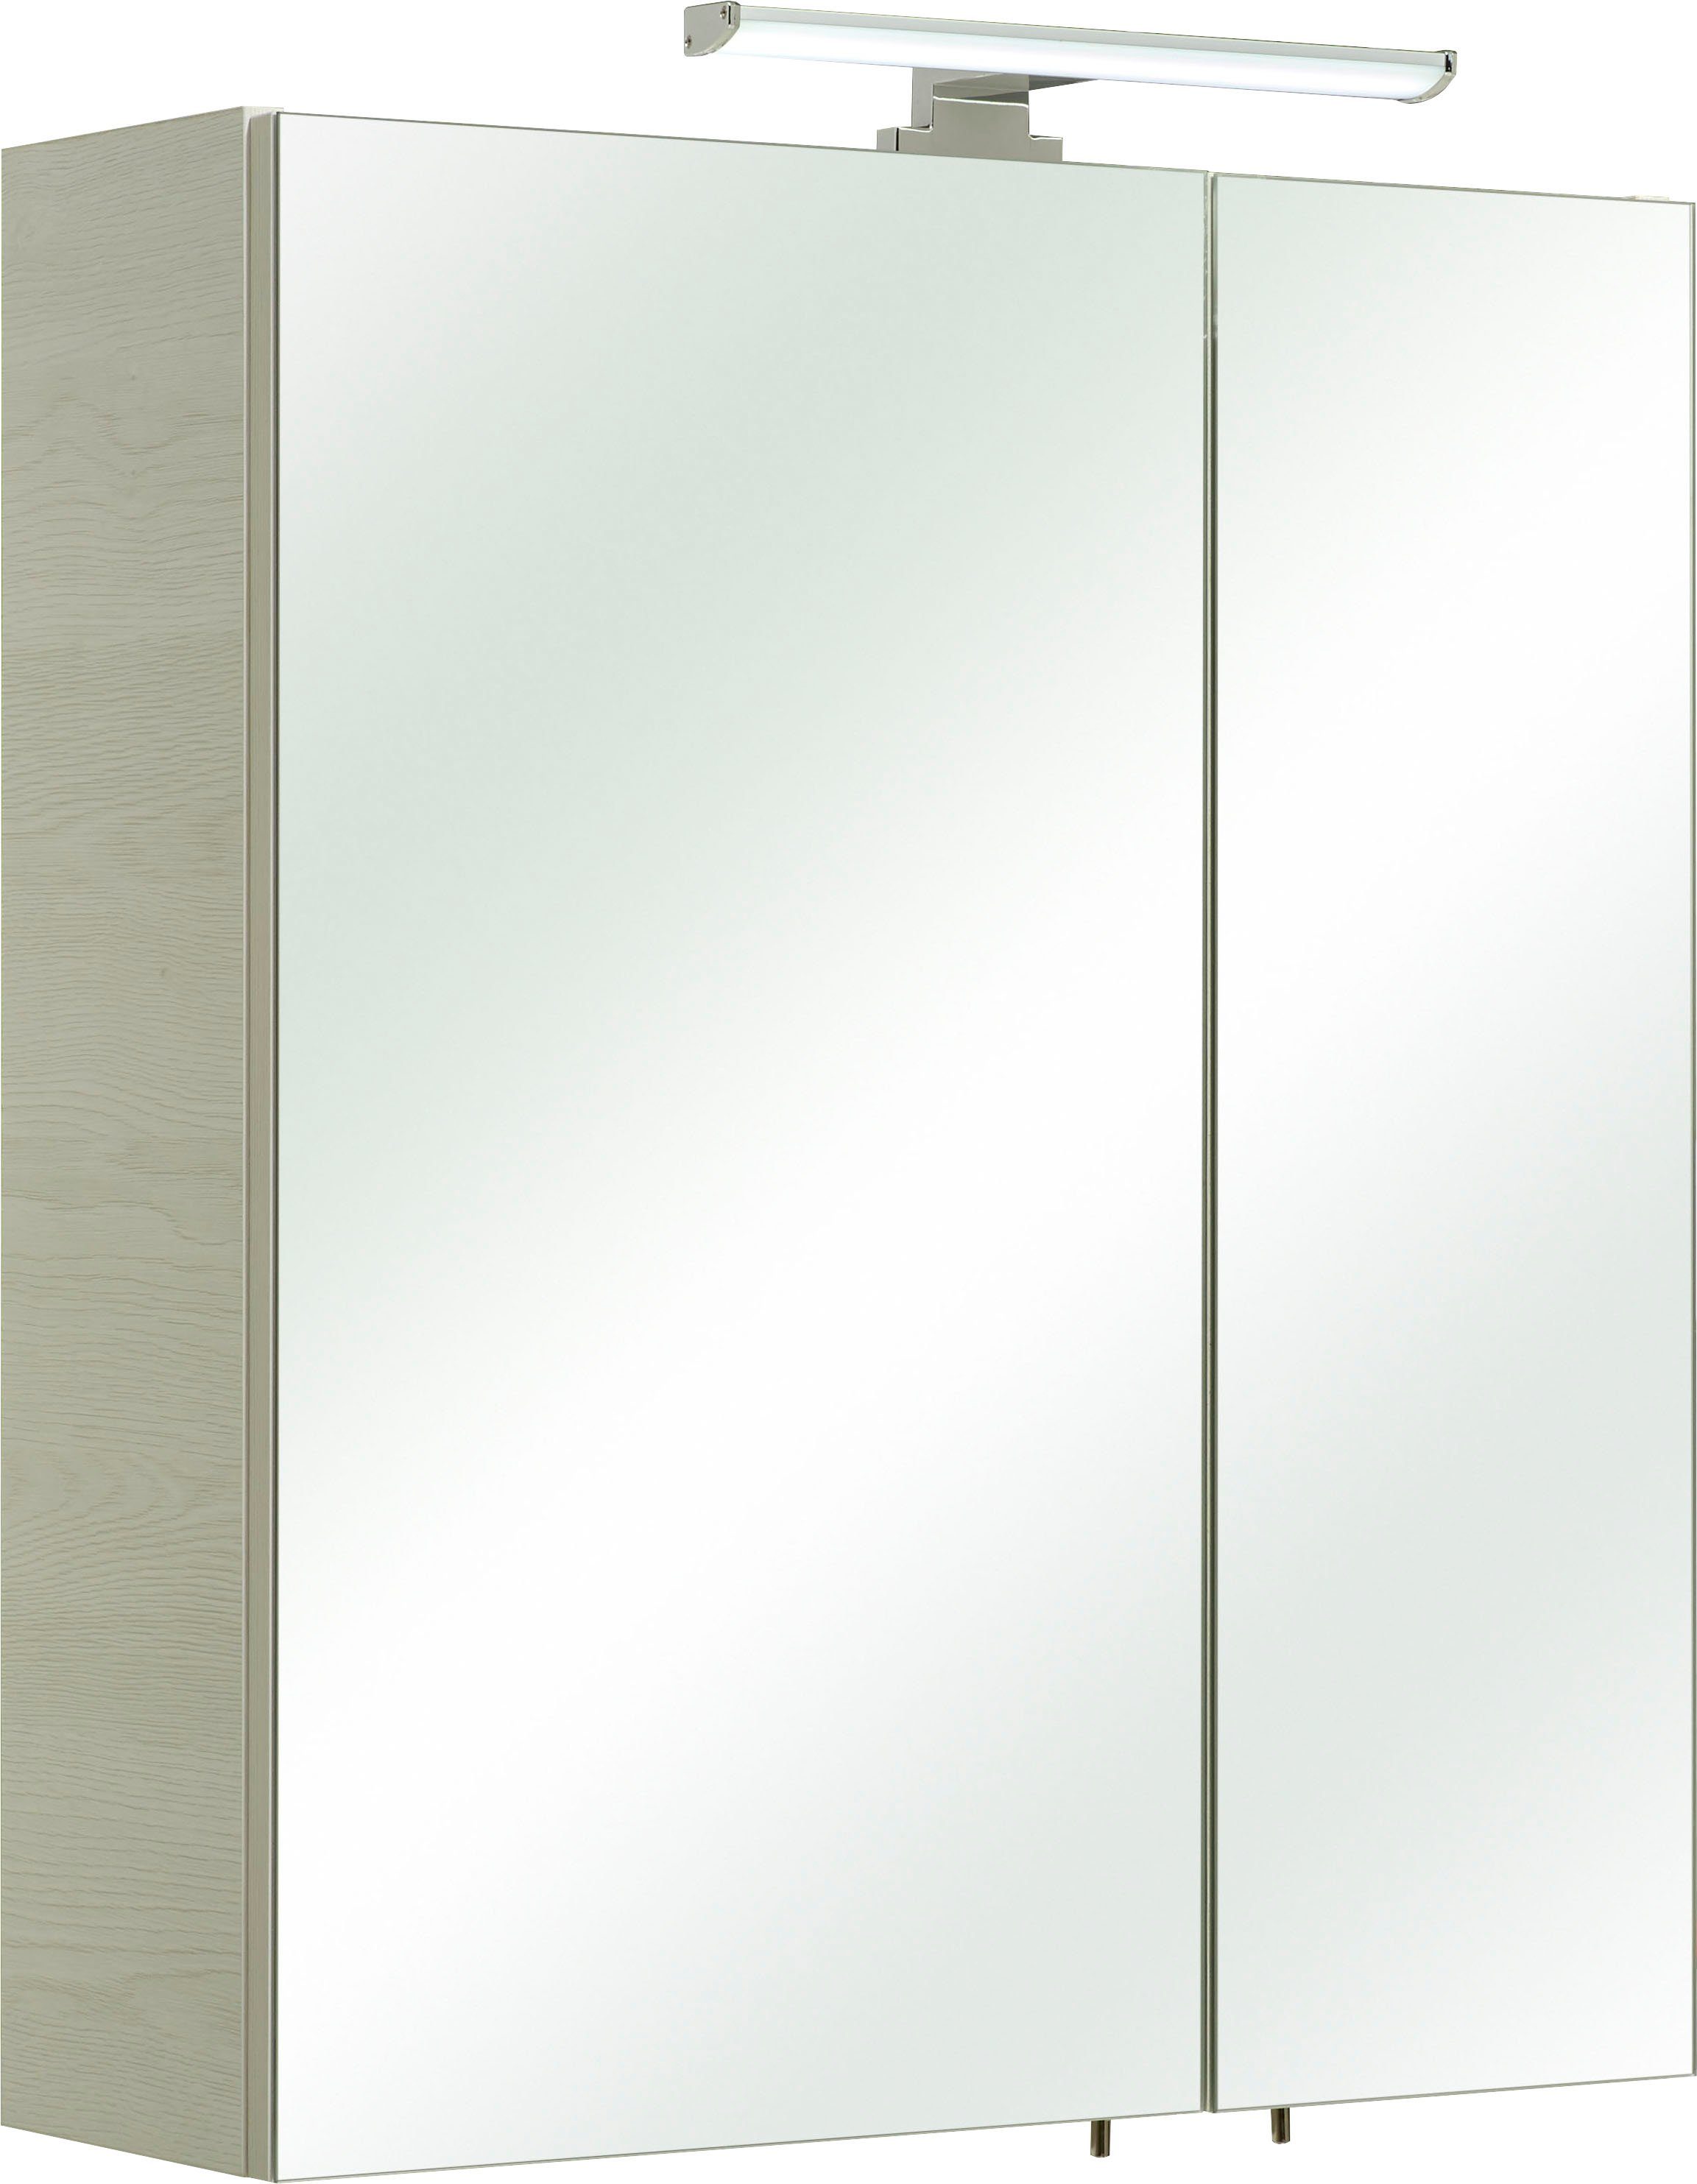 Saphir Spiegelkast Quickset 936 Breedte 60 cm, 2-deurs, ledverlichting, schakelaar-/stekkerdoos